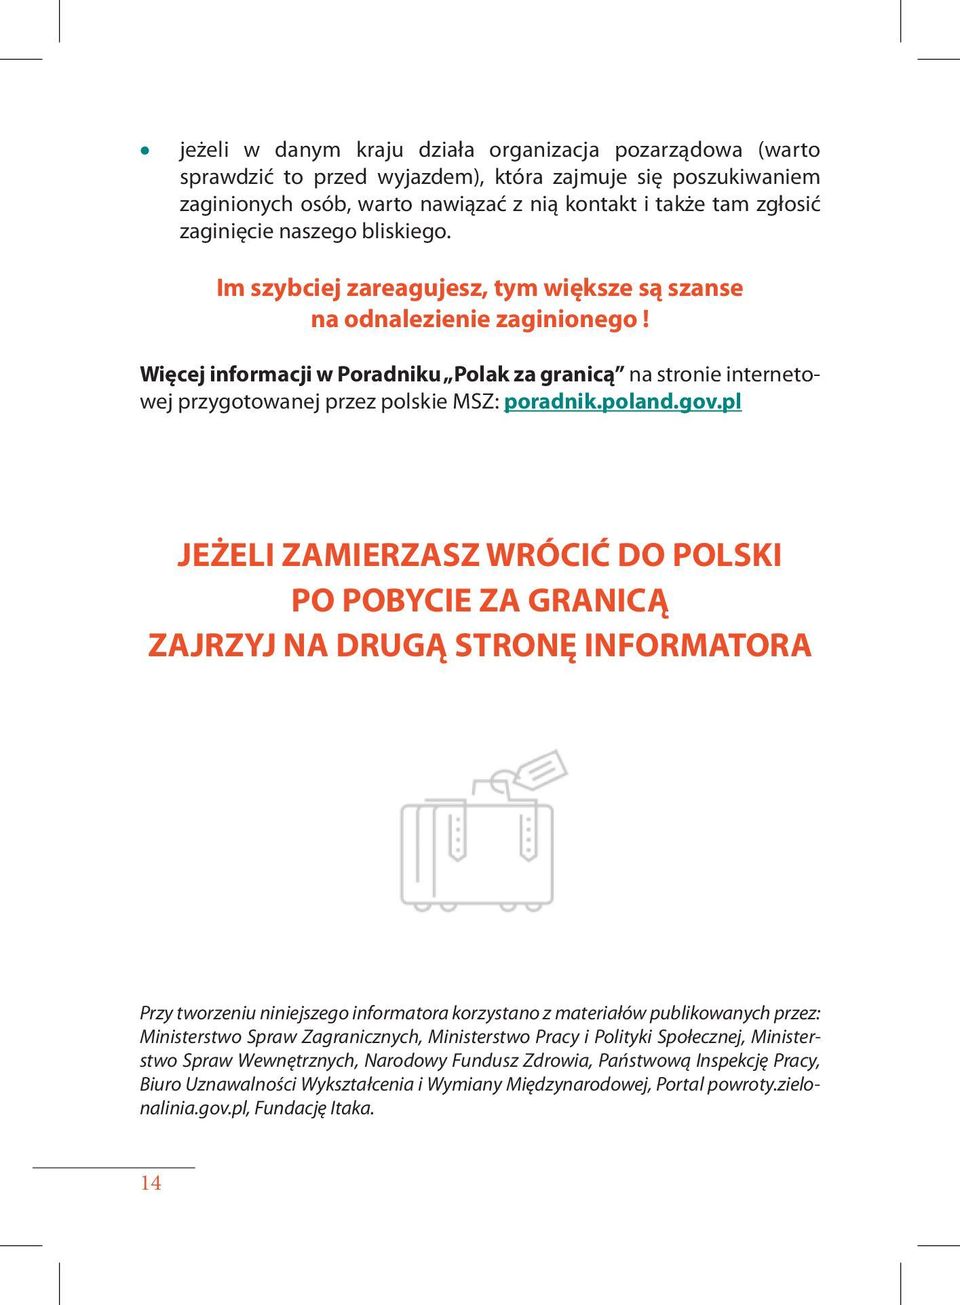 Więcej informacji w Poradniku Polak za granicą na stronie internetowej przygotowanej przez polskie MSZ: poradnik.poland.gov.